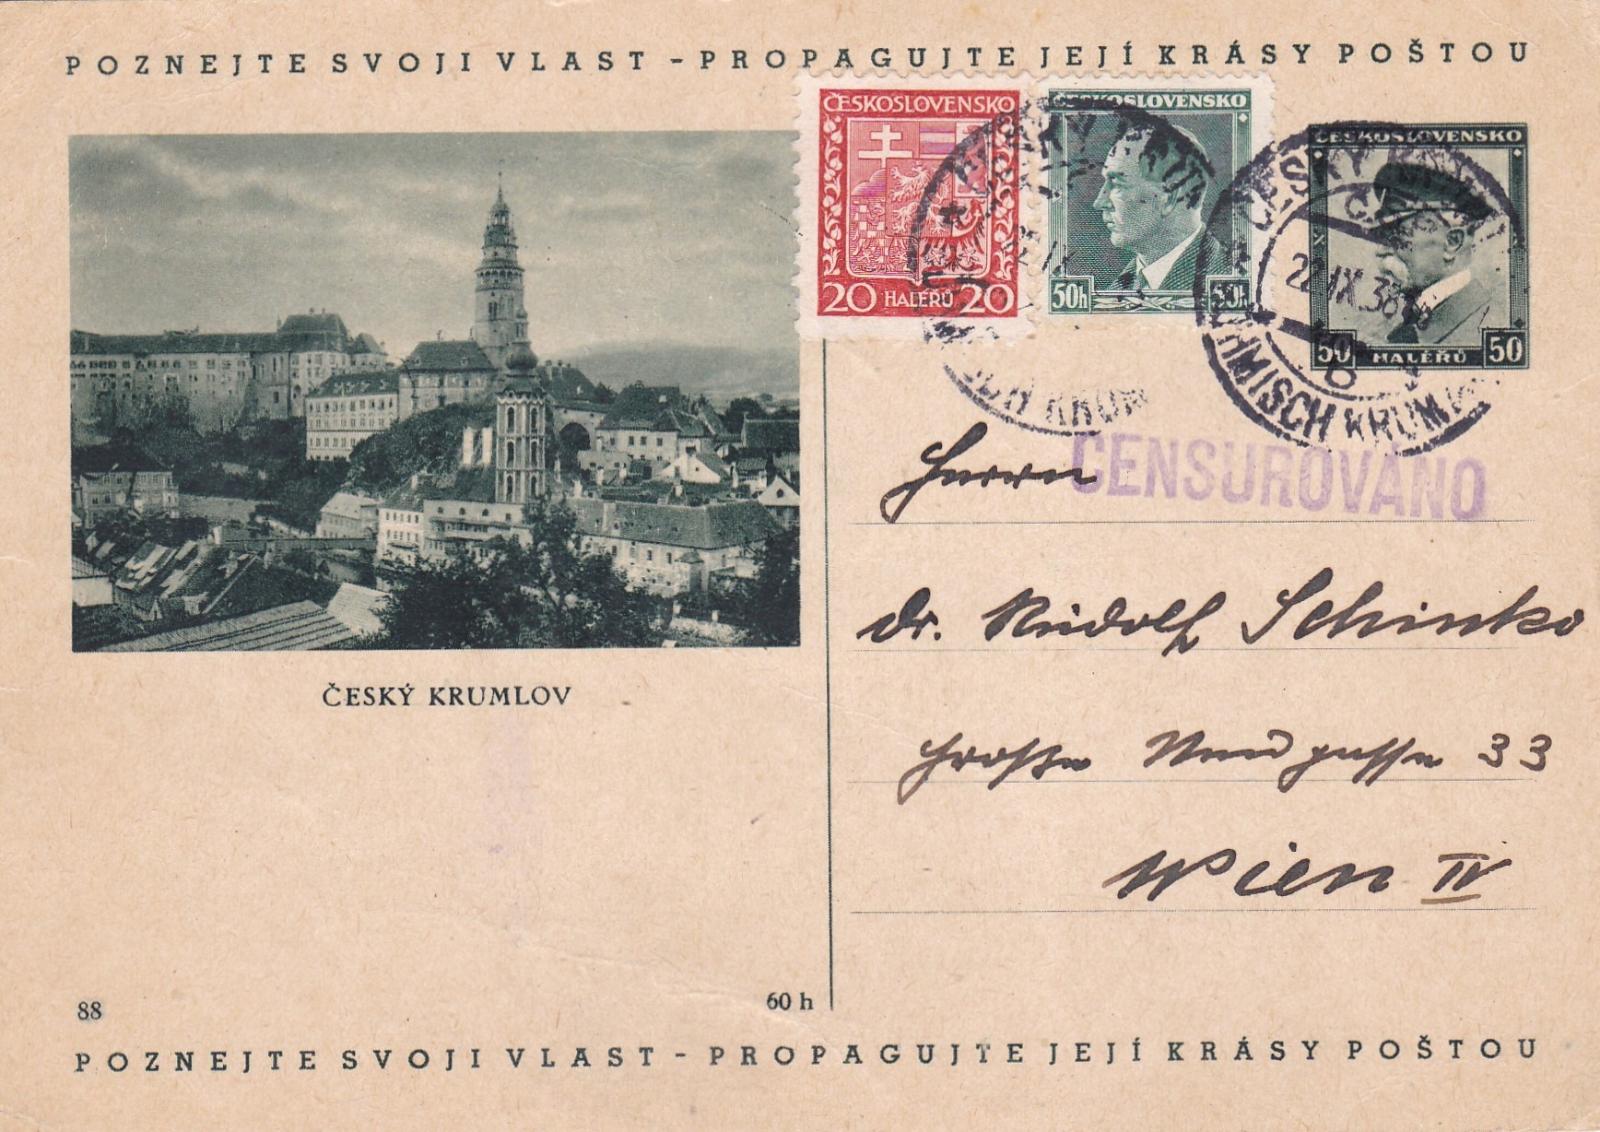 CDV 69/88, Český Krumlov, dofr. 22.9.1938 - Rakúsko, Viedeň. - Filatelia